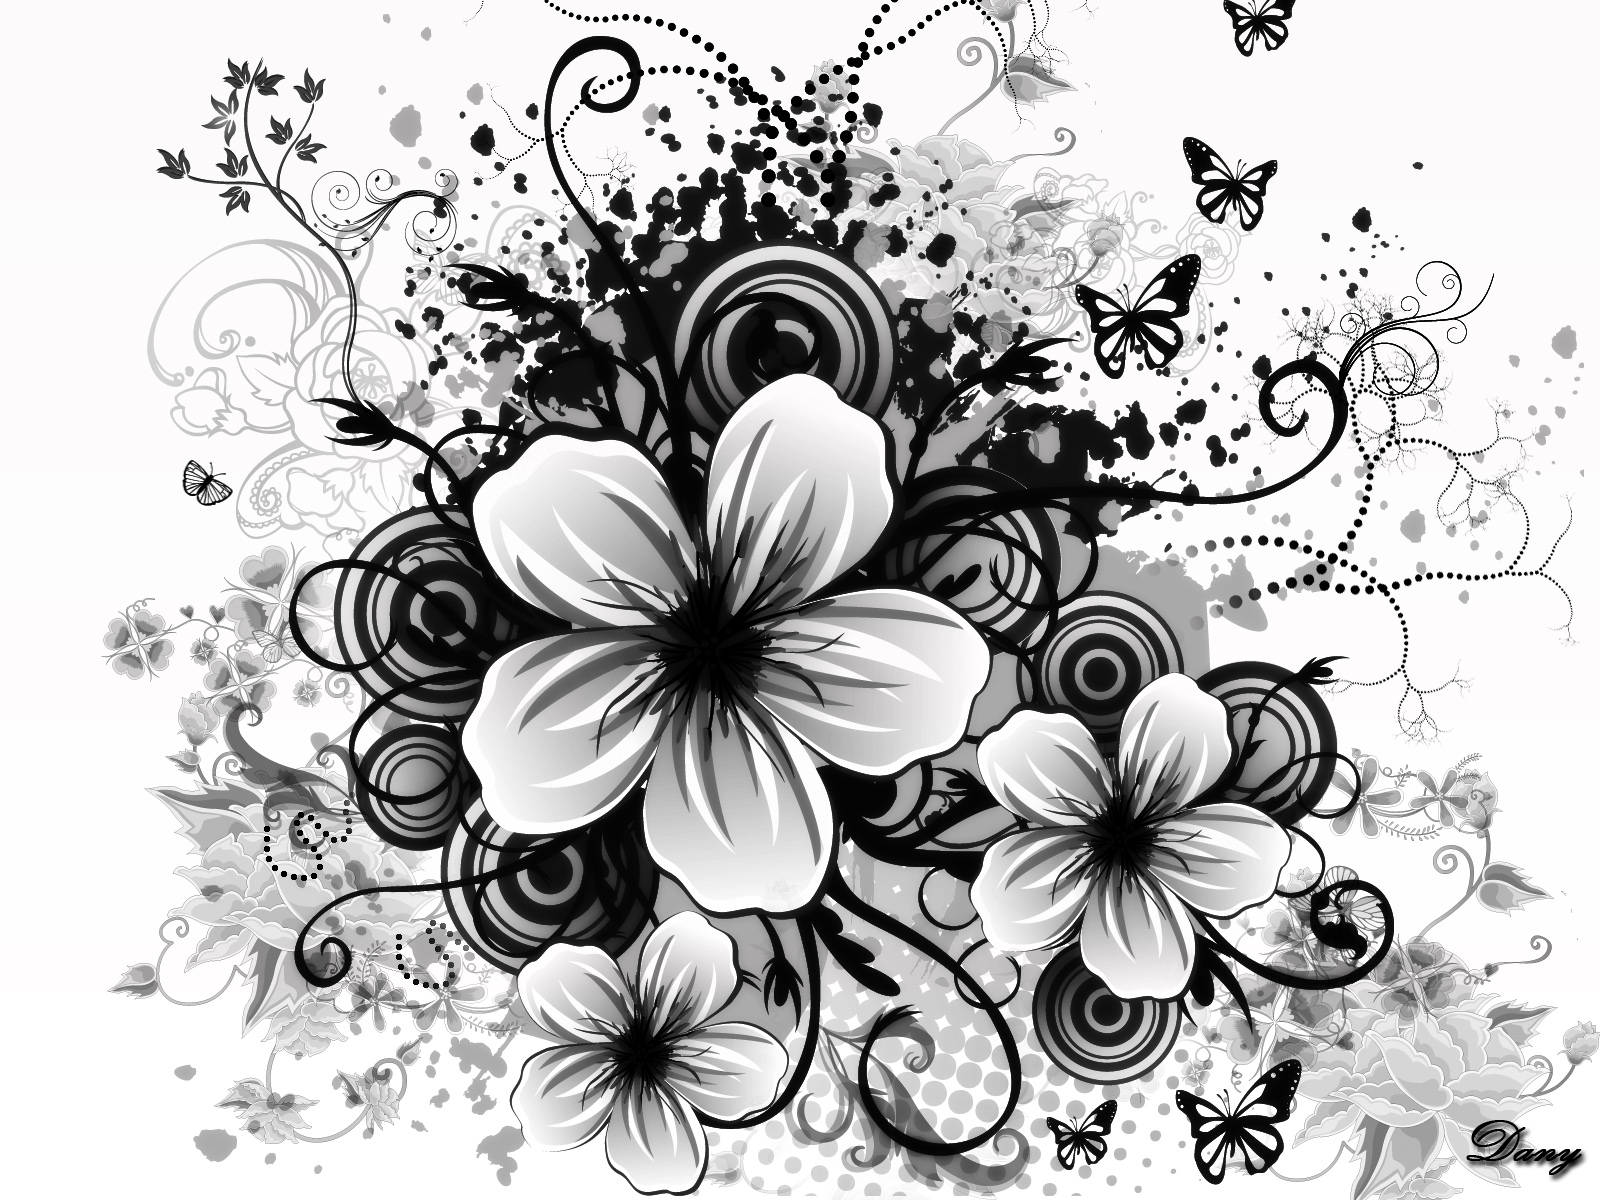 Schwarzeund Weiße Blume, Viele Schmetterlinge Fliegen. Wallpaper